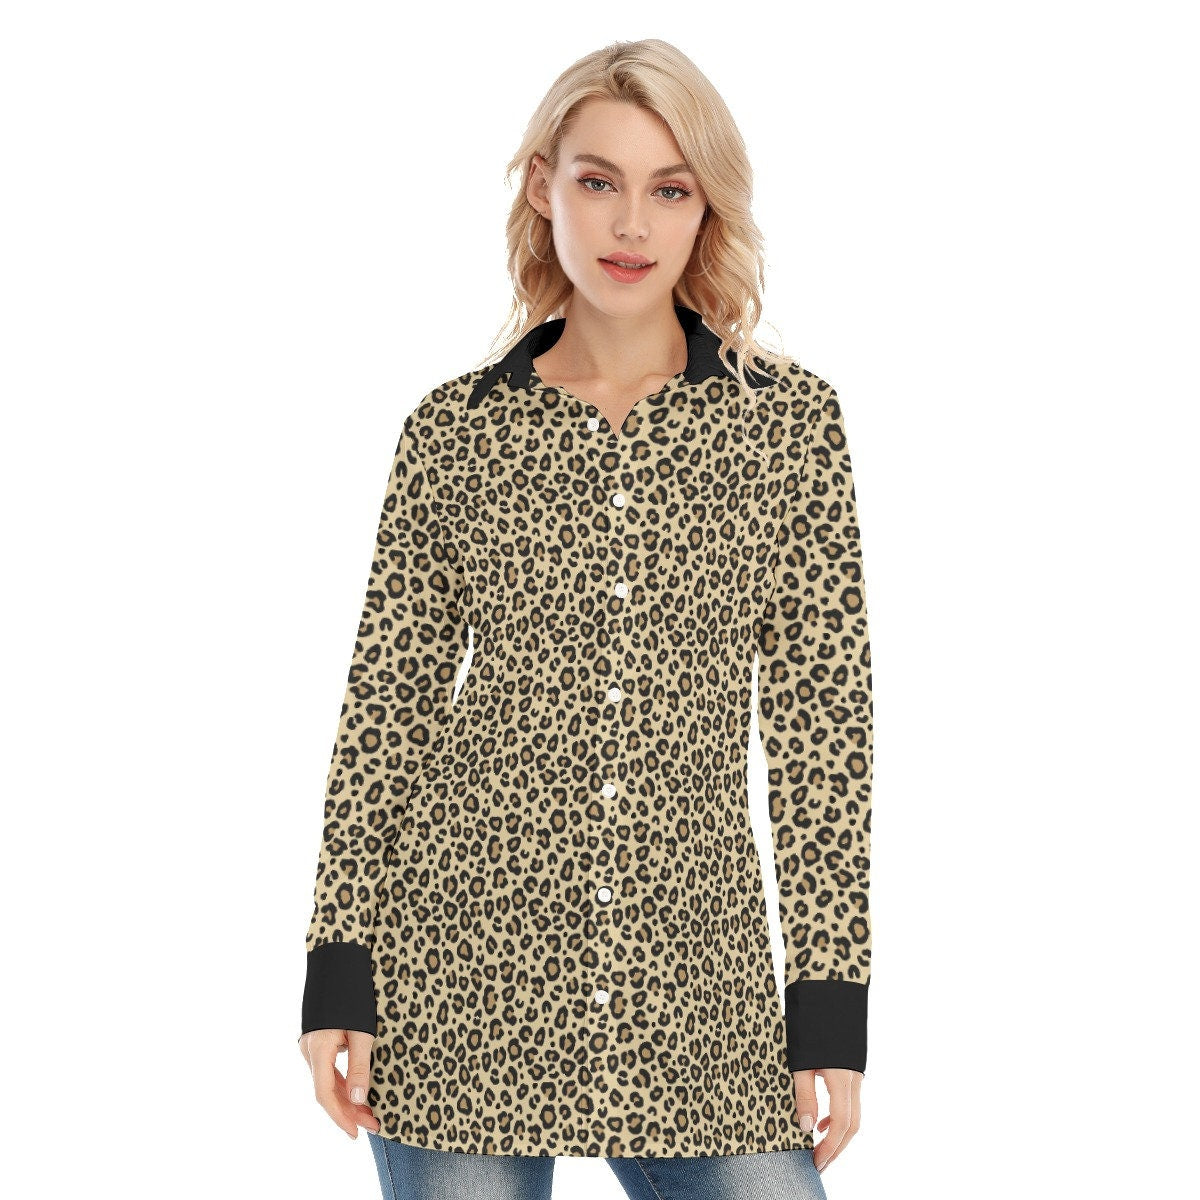 Leopard Shirt, Handmade Leopard Print Shirt, Sexy Shirt, Animal Print Shirt,Women's Blouse,Women's Top,Long Sleeve Shirt Women, High fashion